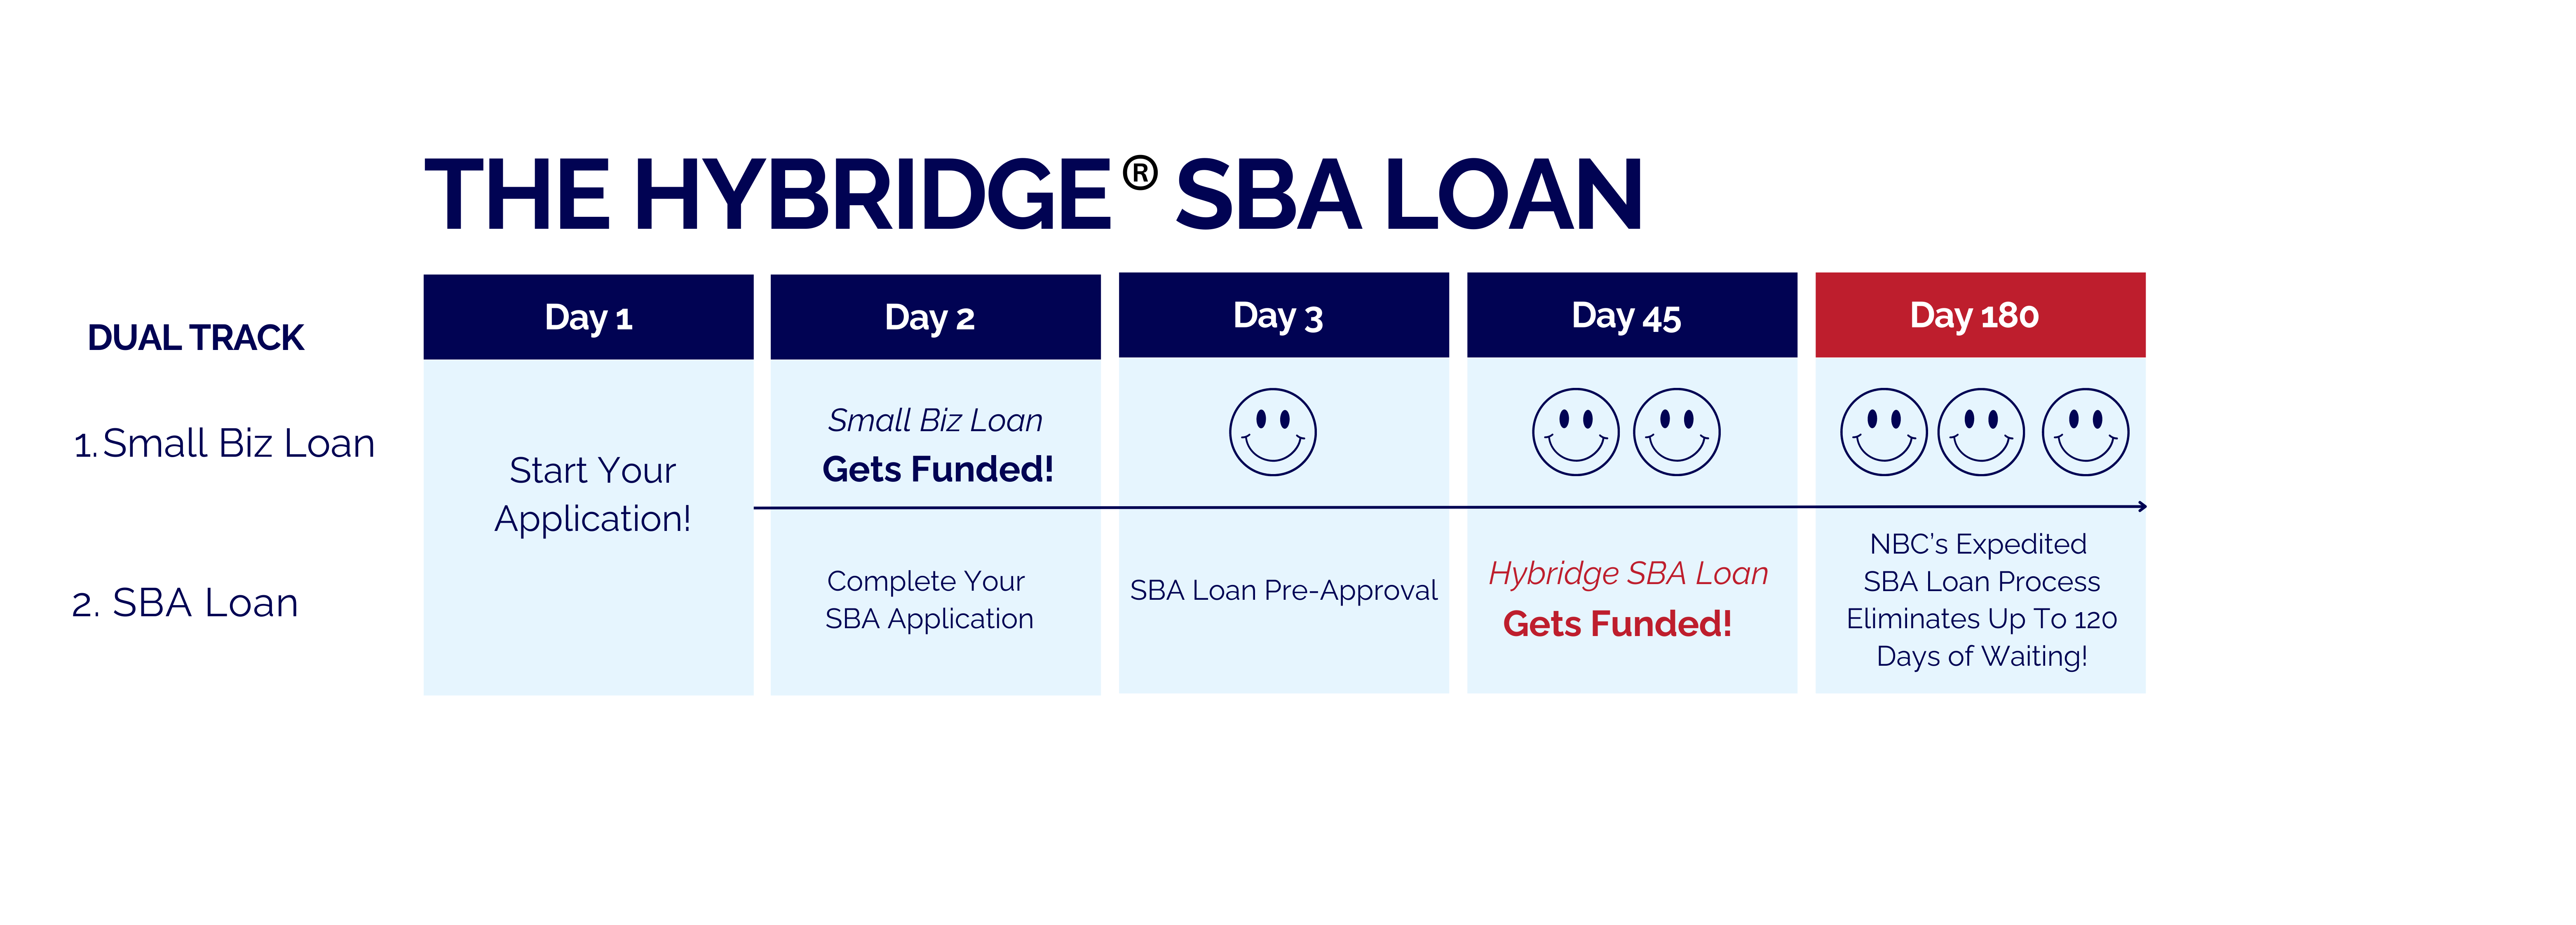 hybridge-sba-loan-timeline updated